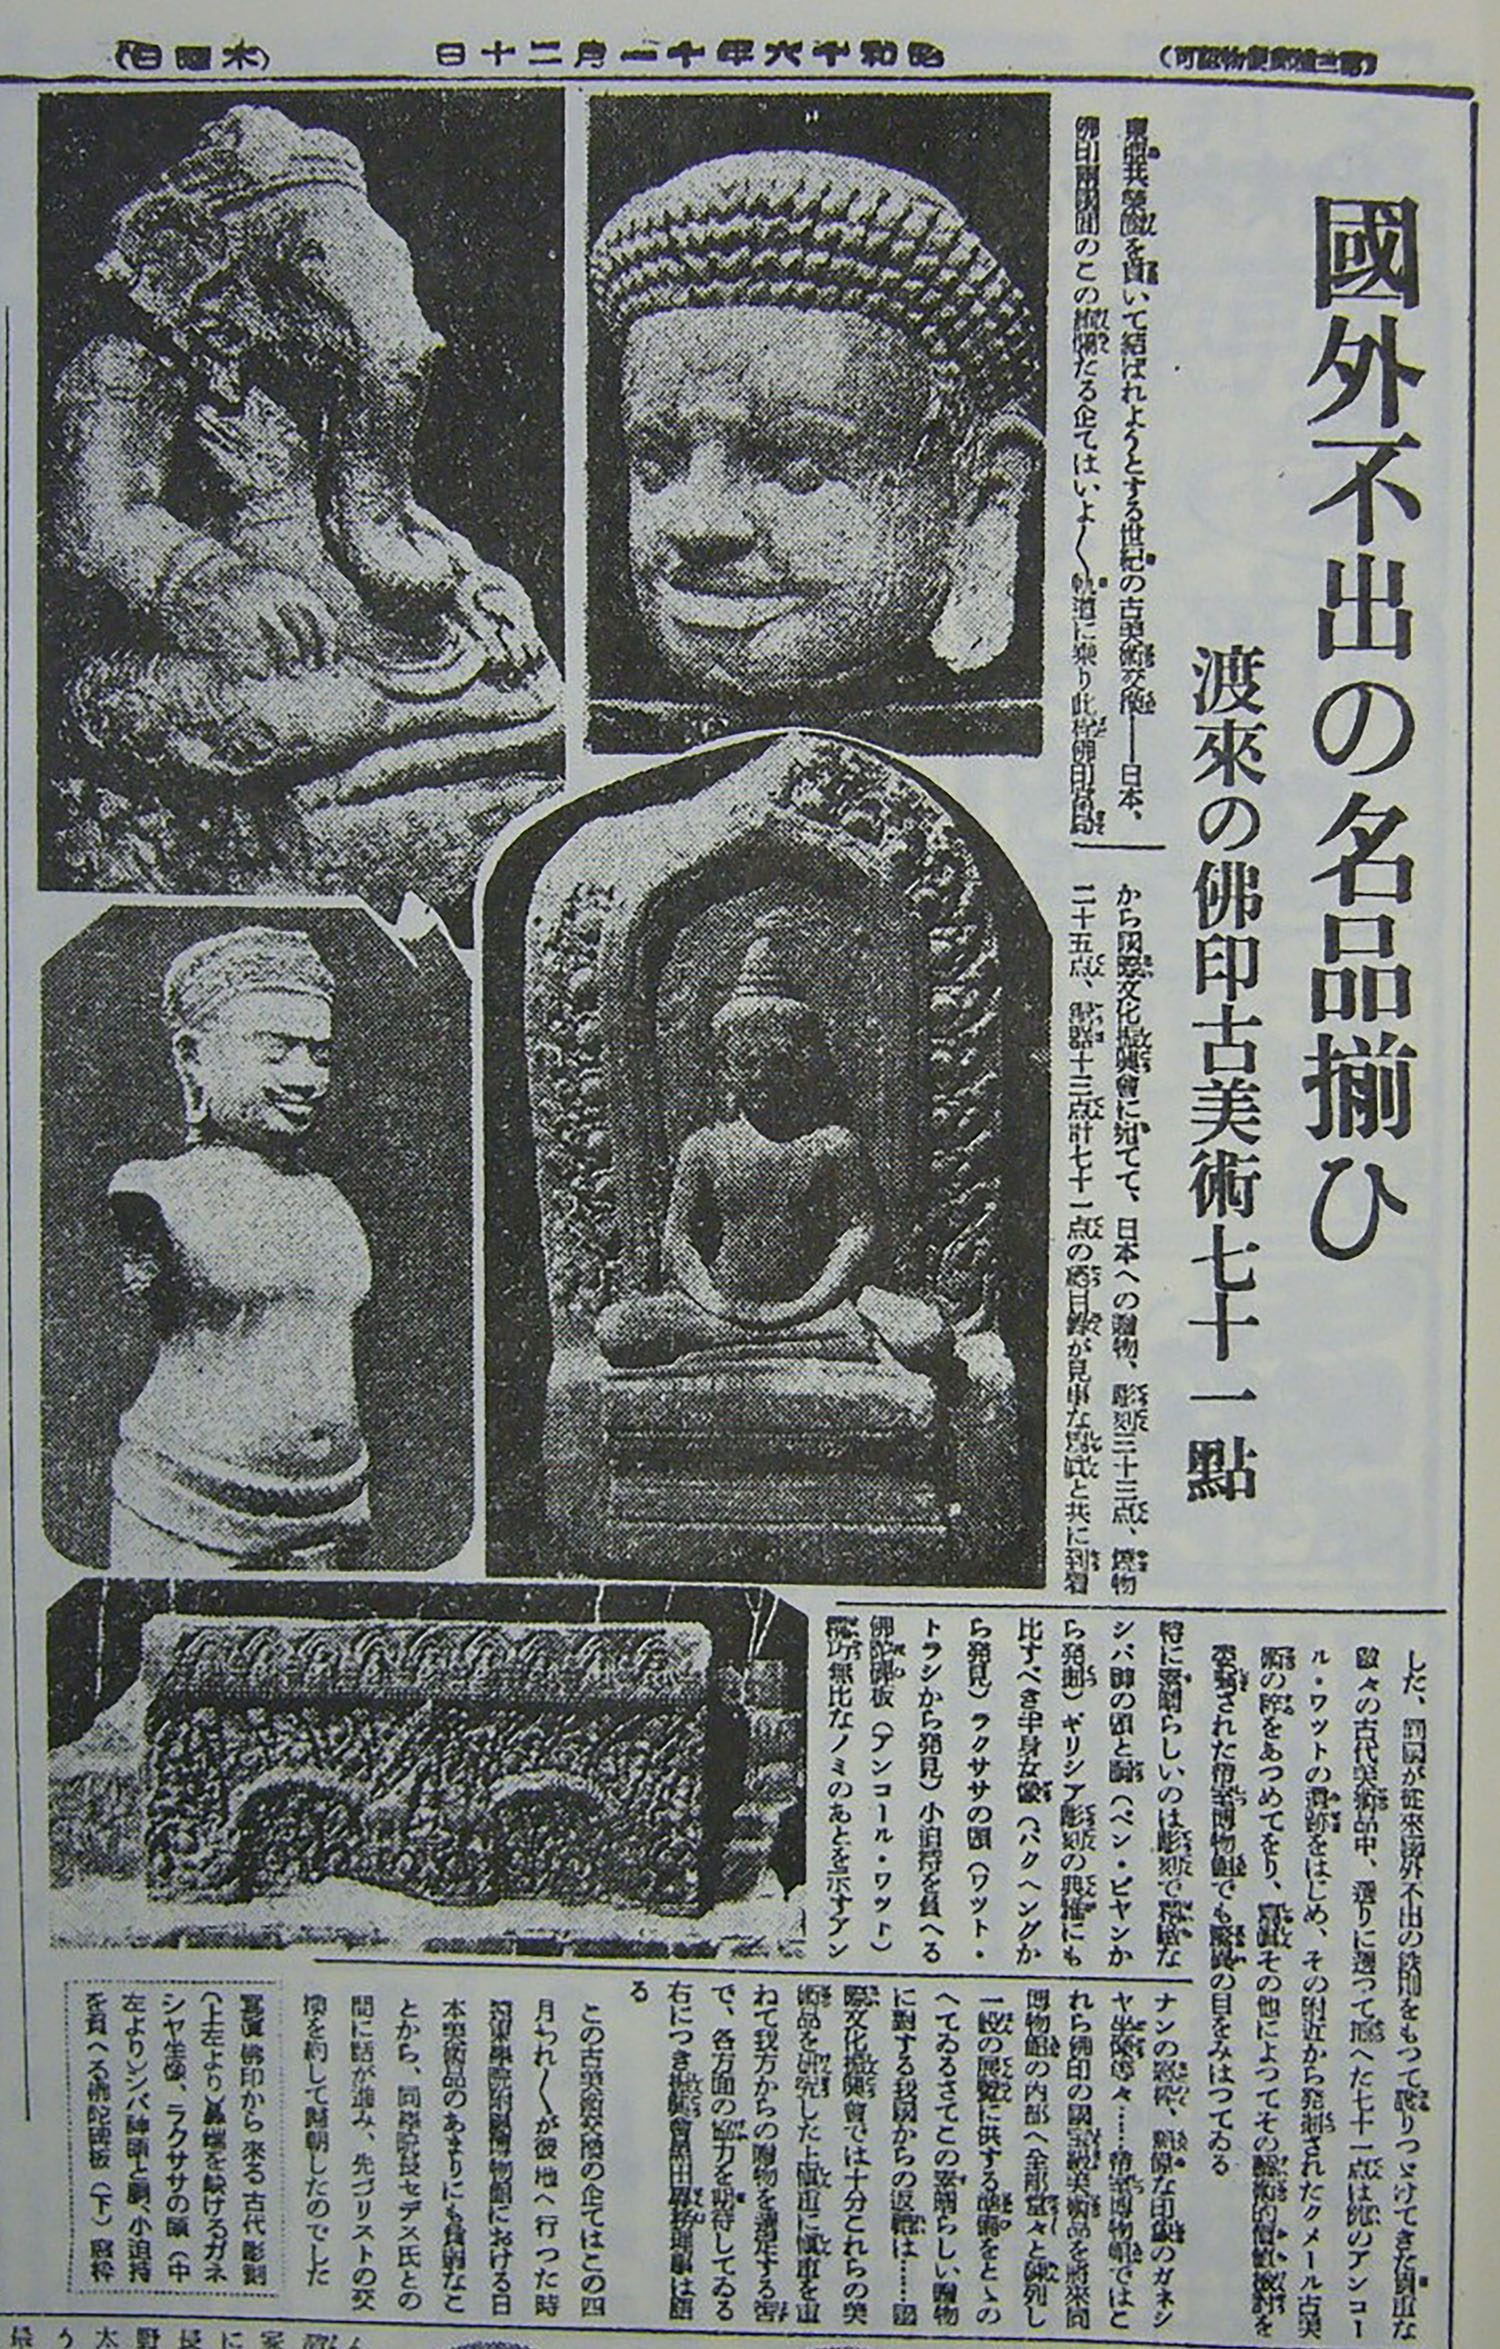 khmer-art-japan-asahi-shimbun-1941.jpg#asset:5271